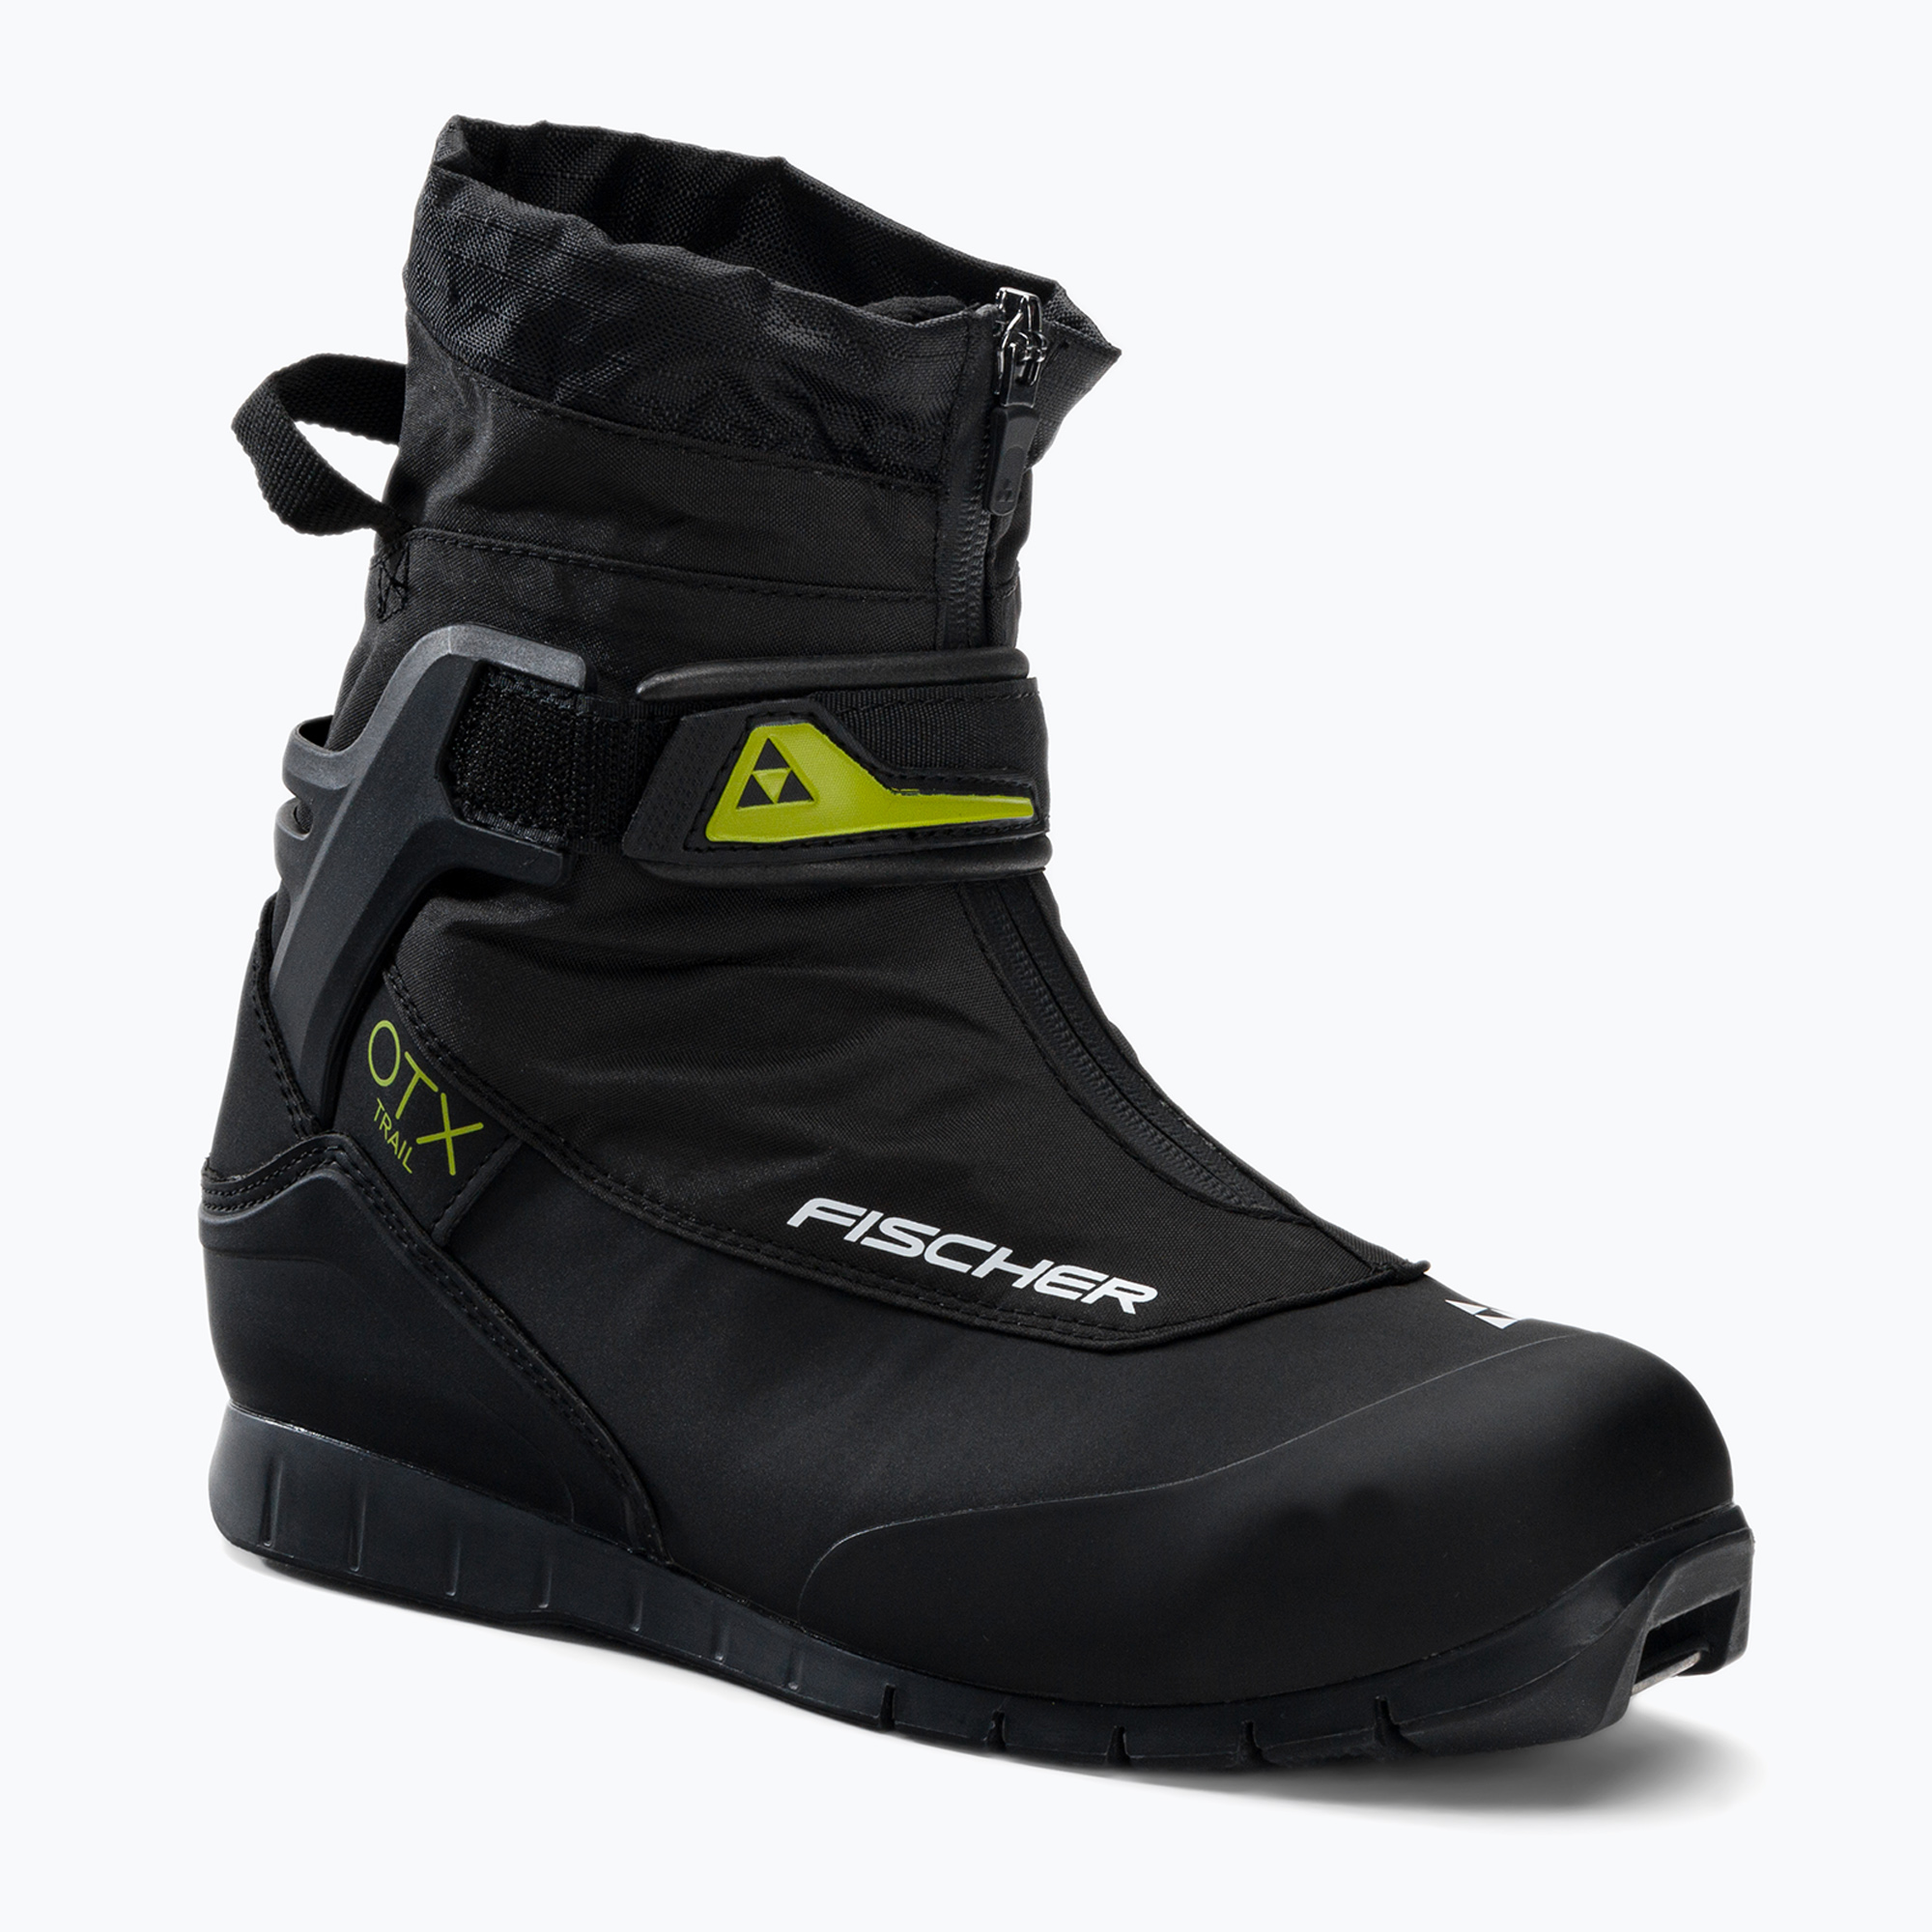 Topánky na bežecké lyžovanie Fischer OTX Trail čierno-žlté S35421,41